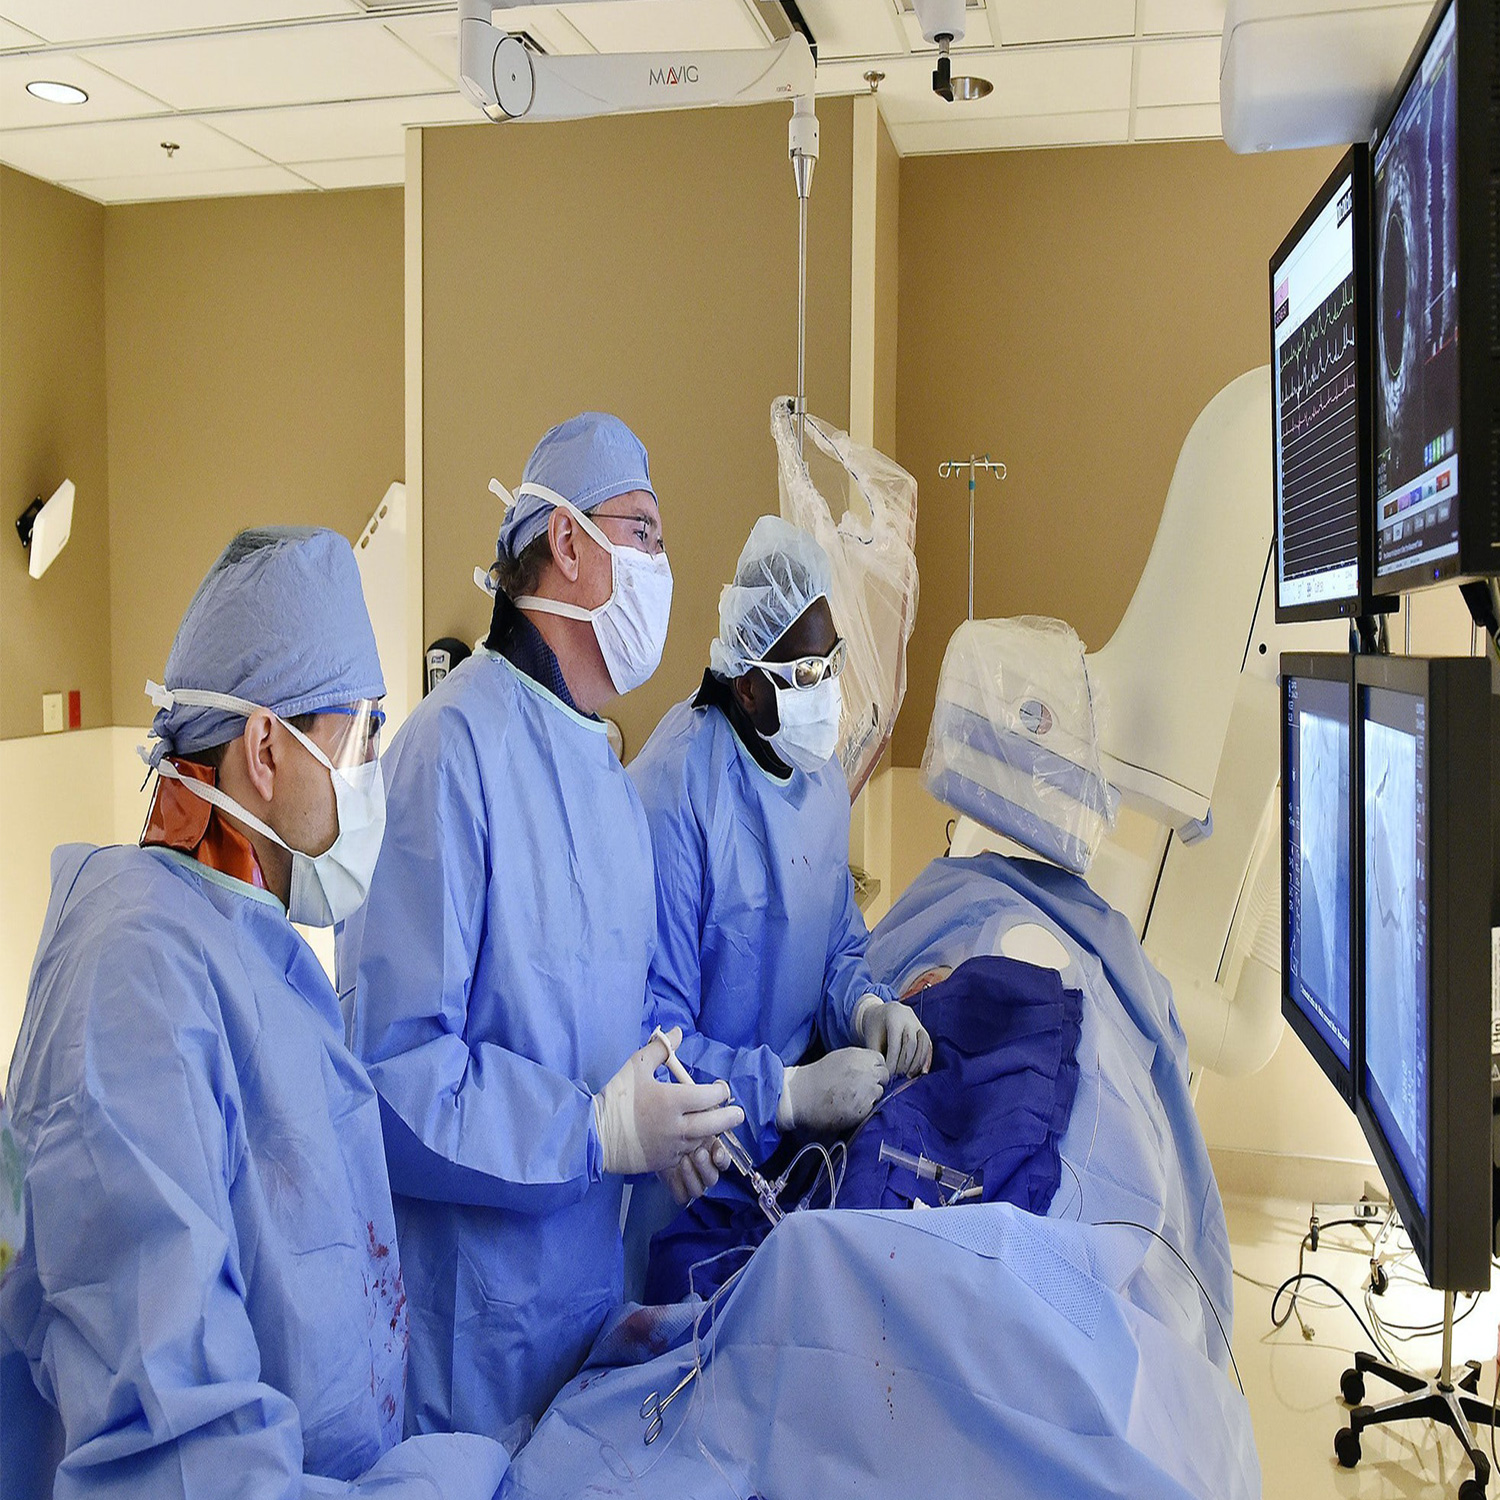 آنژیوگرافی یک عمل جراحی است که در آن با ورود یک لوله باریک توسط پزشک شریان وضعیت عروق قلب فرد بیمار مشخص می‌شود.